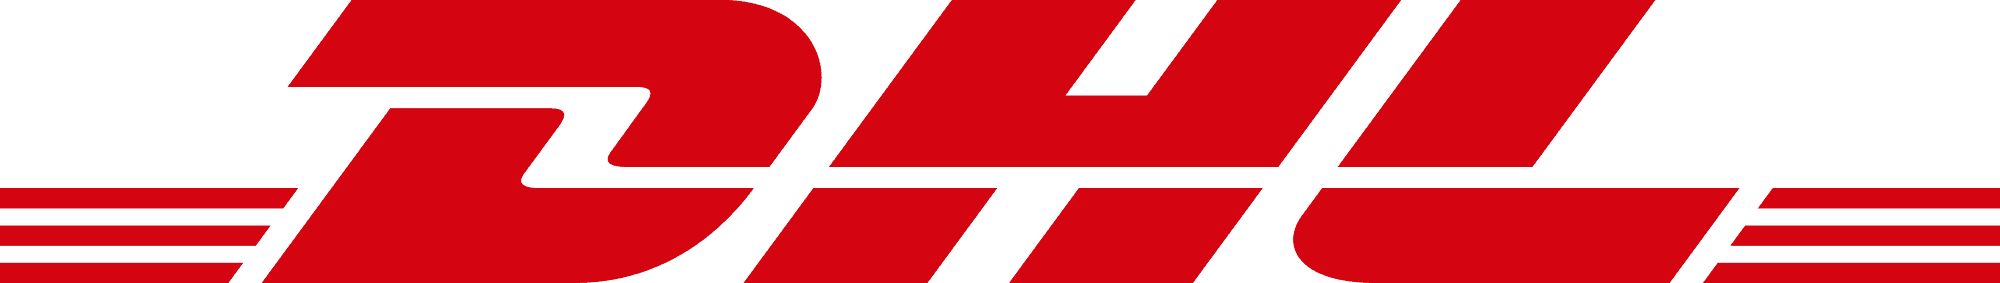 DHL logo rgb BG